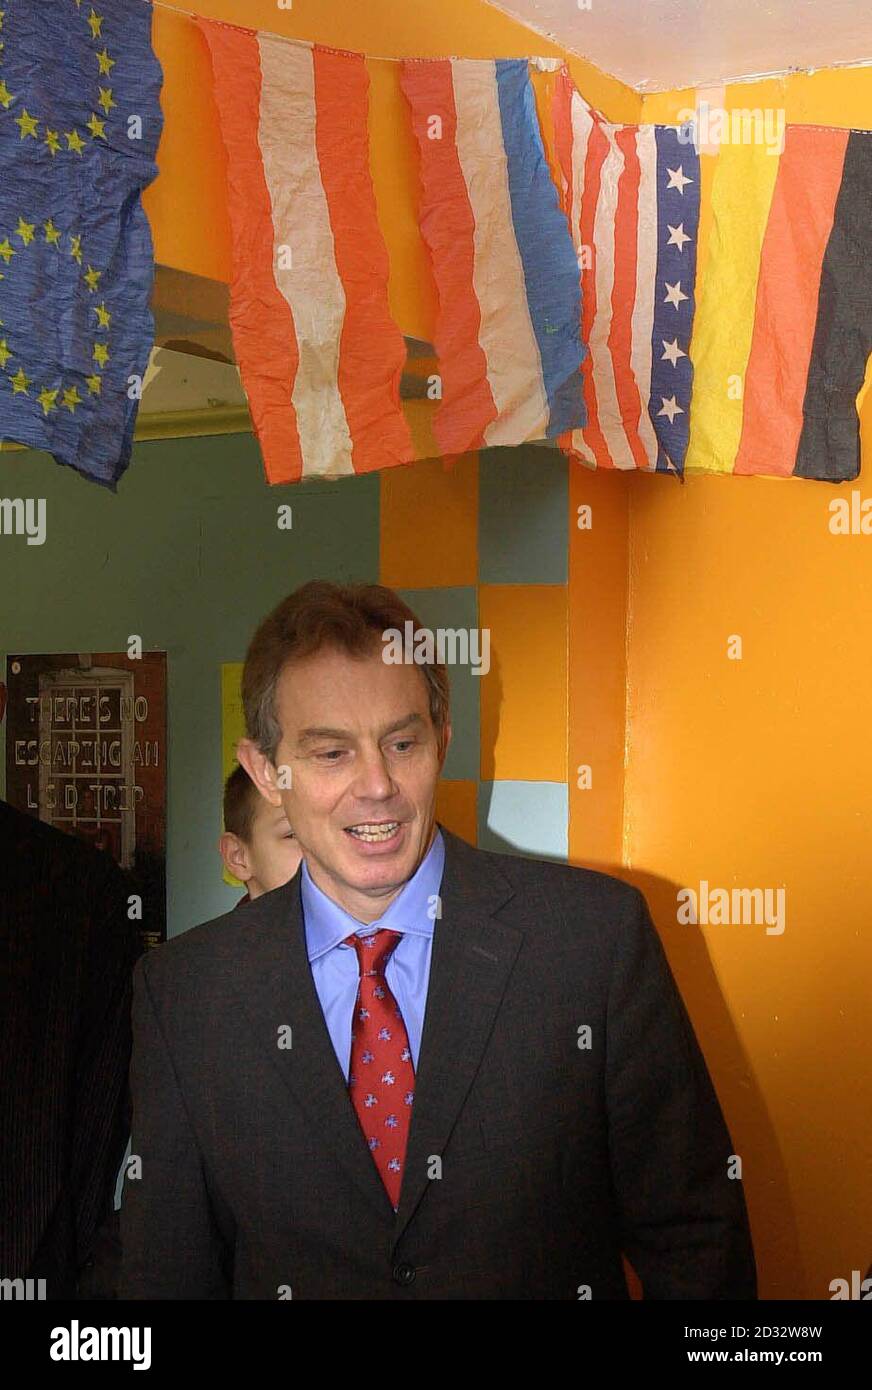 Le Premier ministre Tony Blair se tient sous une rangée de drapeaux internationaux ainsi que le drapeau de l'UE lors d'une visite dans un club de la jeunesse de Beeston, Leeds. Banque D'Images